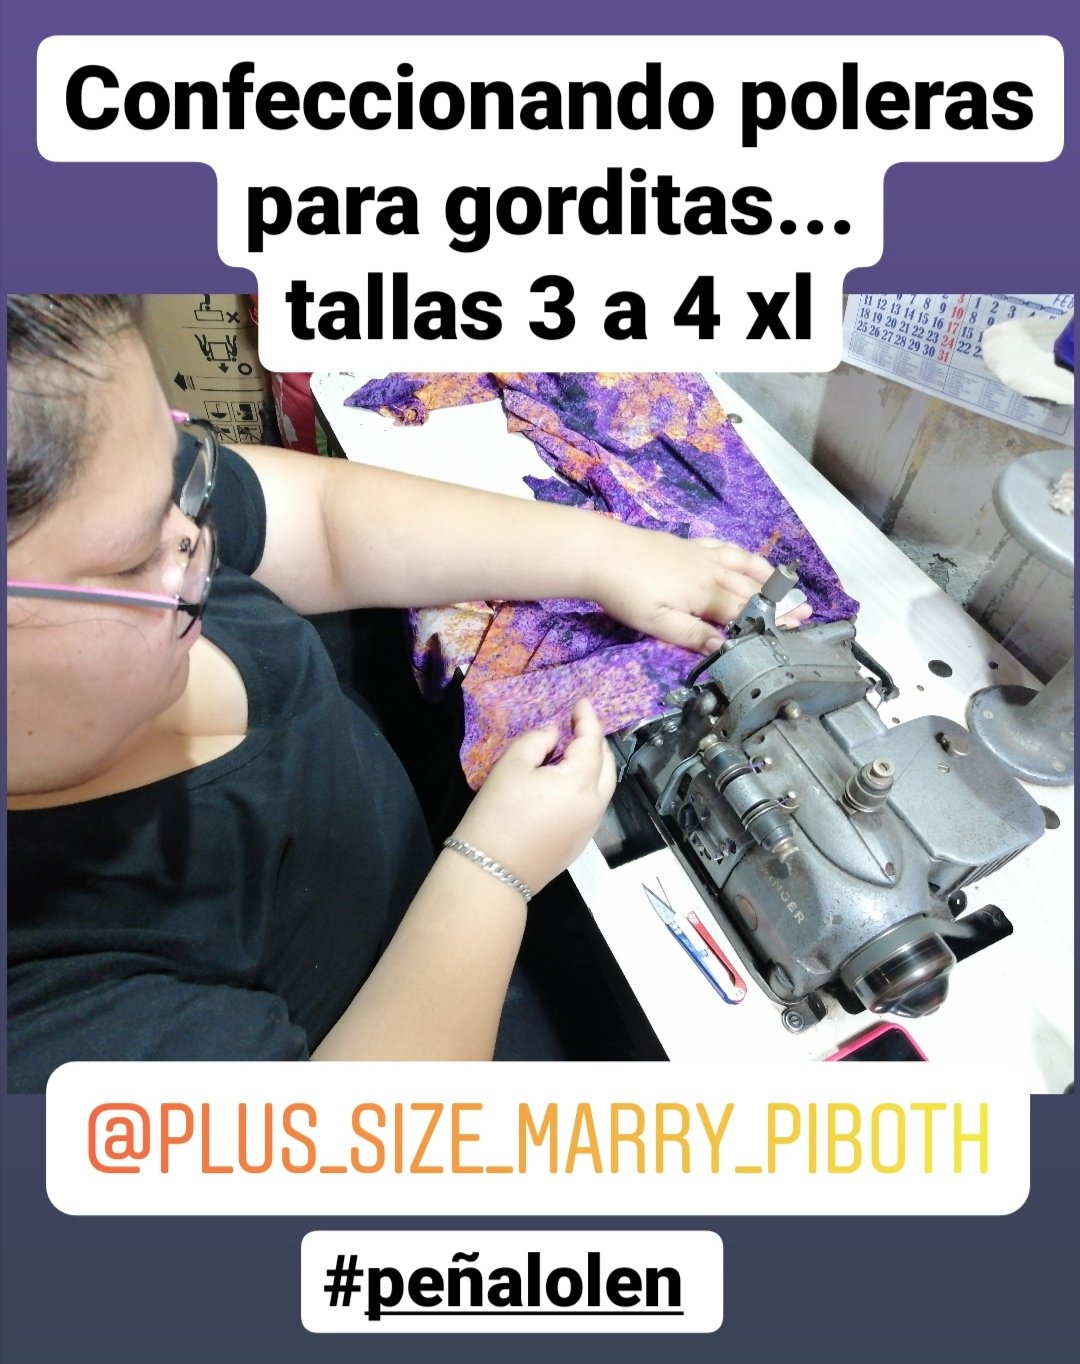 DINO ARCADE 🎮 on Twitter: "@loayalau Fabricamos poleras y ropa para mujeres gorditas tallas especiales somos de #peñalolen https://t.co/dUwpDO9iA5" / Twitter